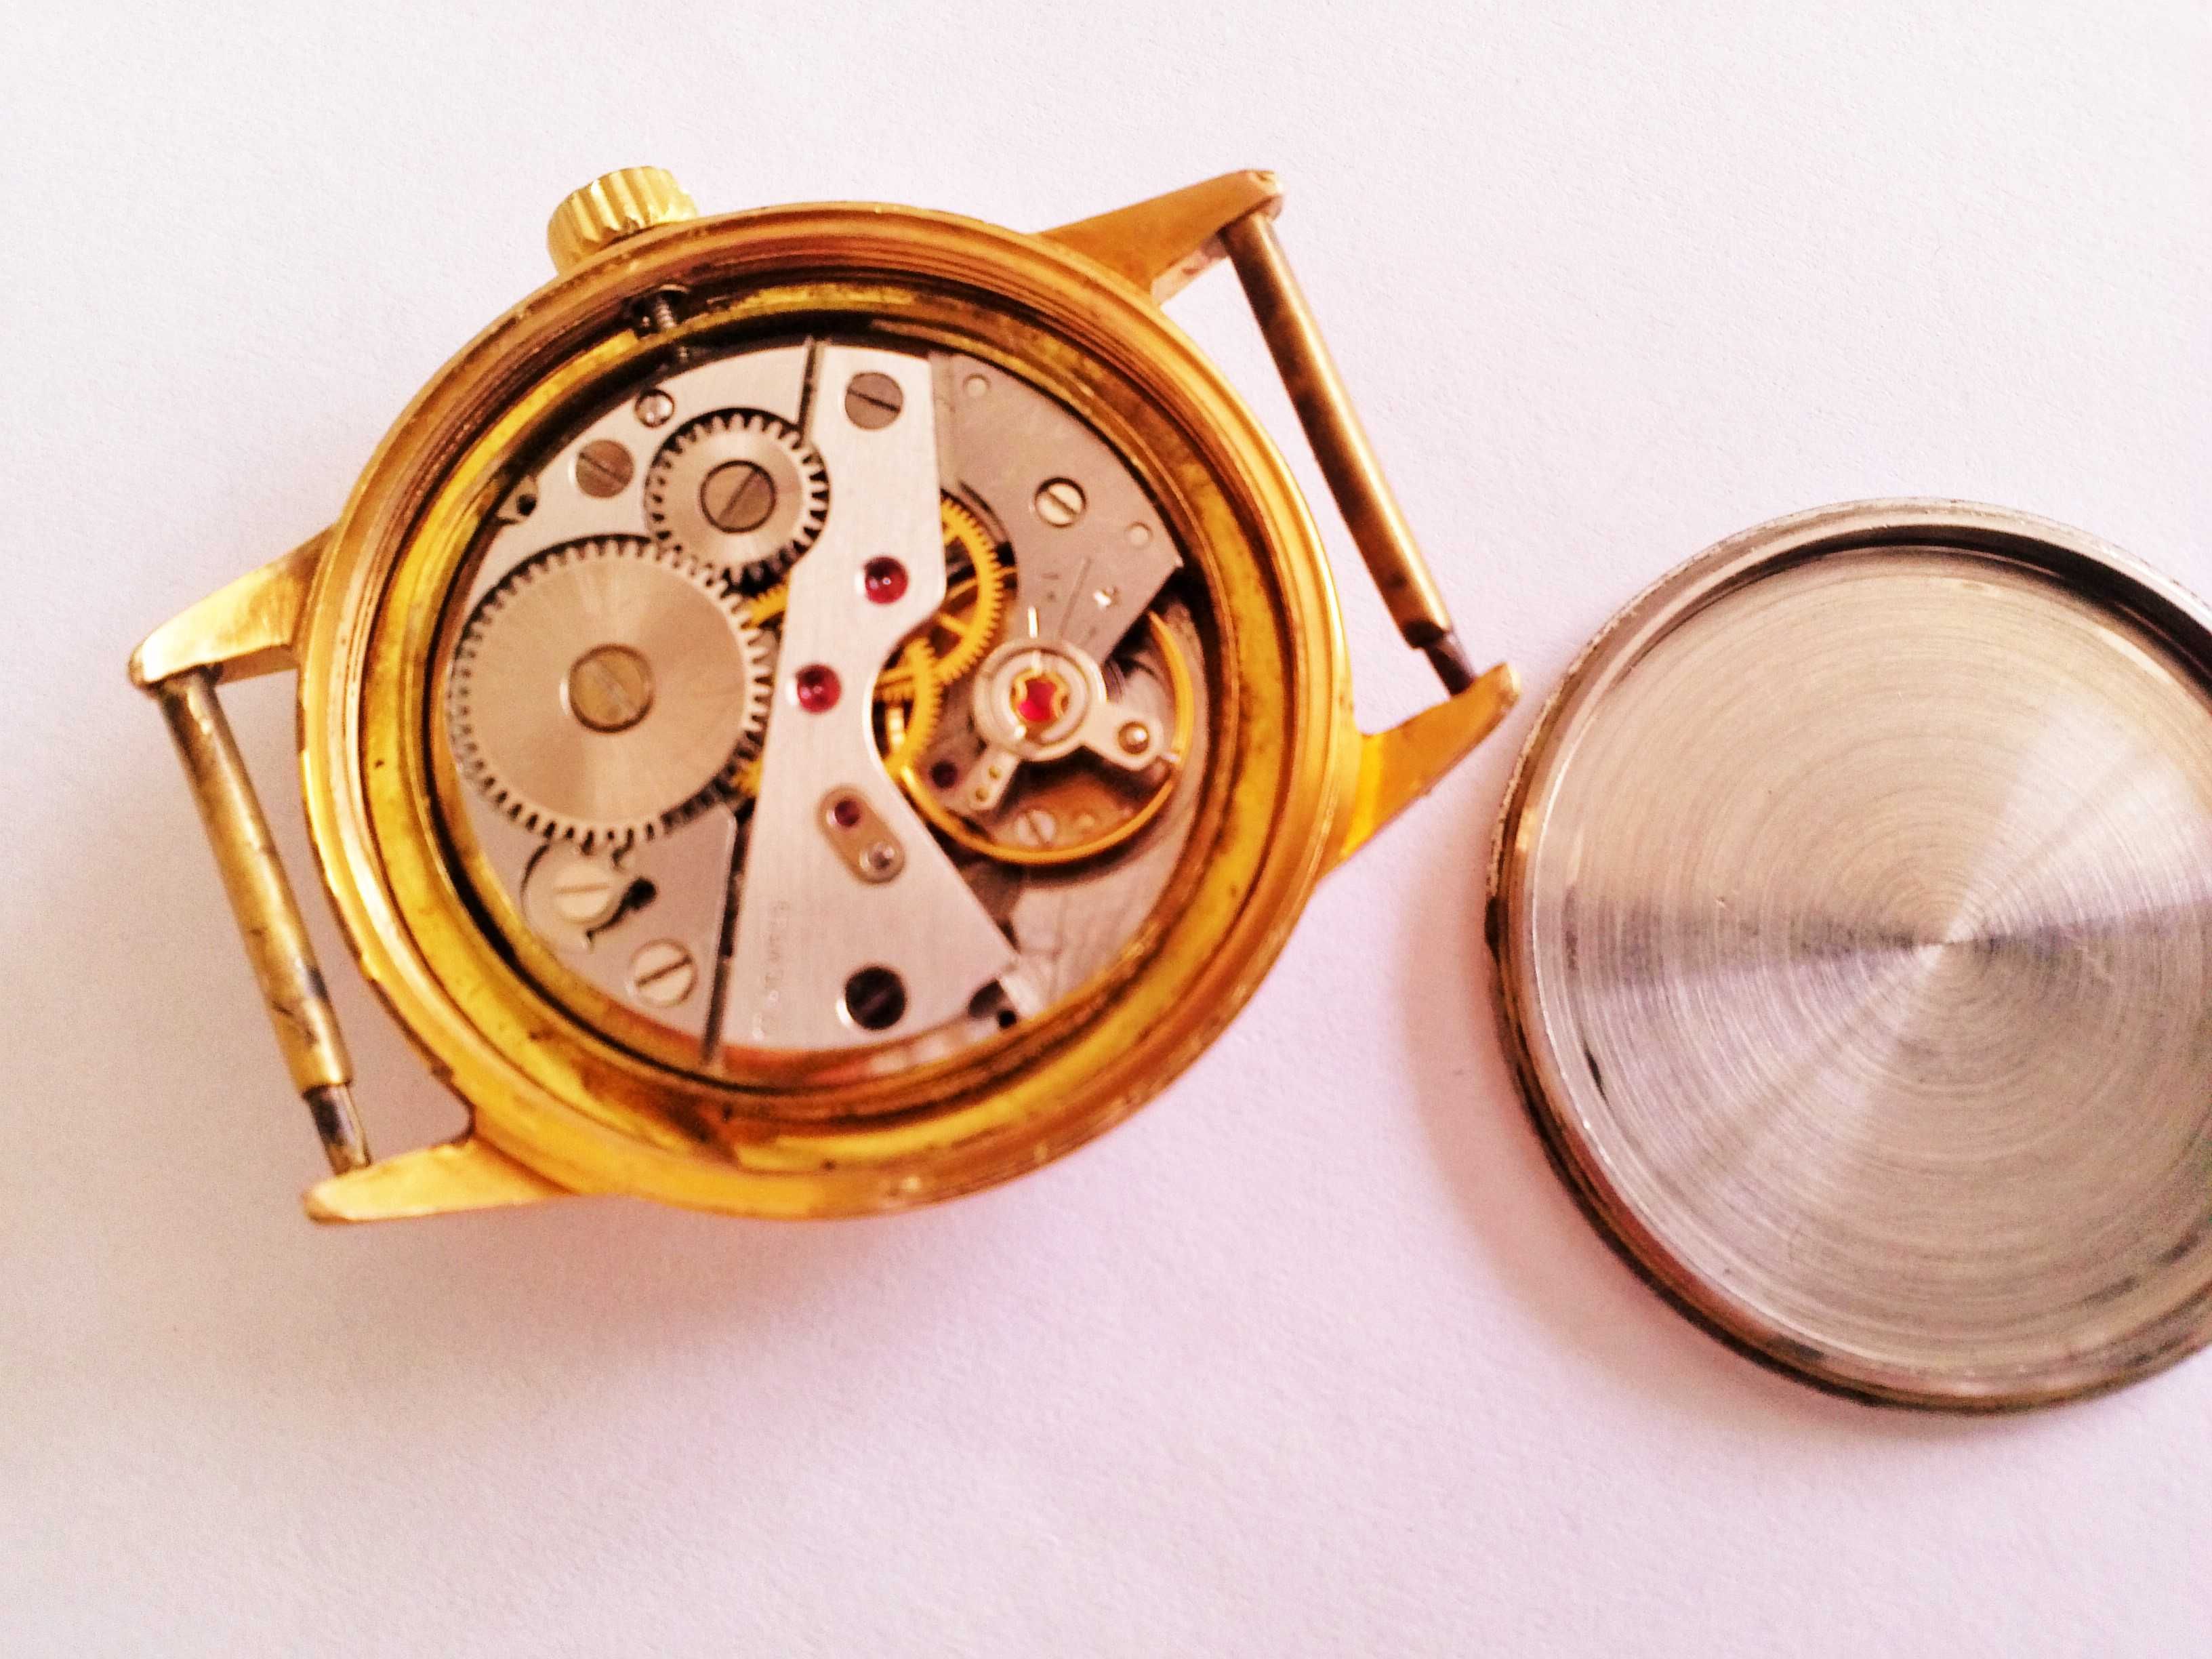 Zegarek naręczny męski marki DAUPHINE złocony 18K złotem sprawny